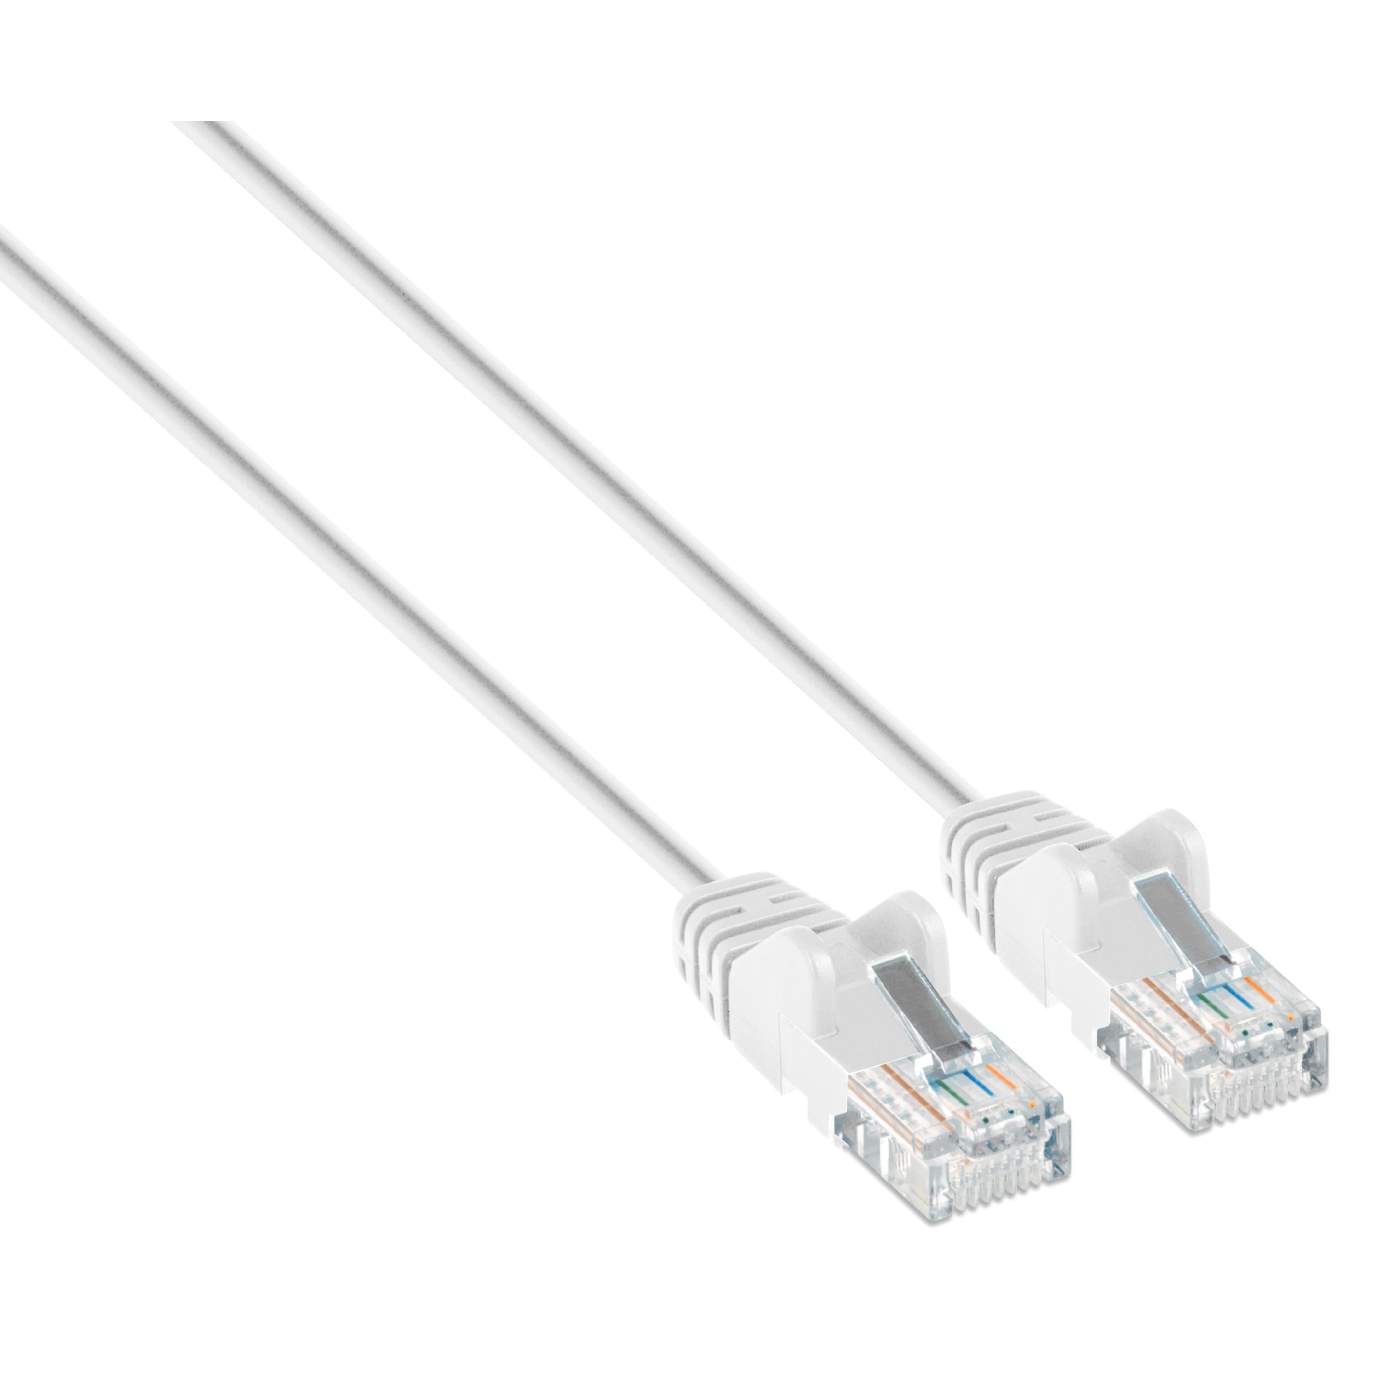 Câbles réseau INTELLINET Cable RJ45 cat 6 2m gris - Scoop gaming